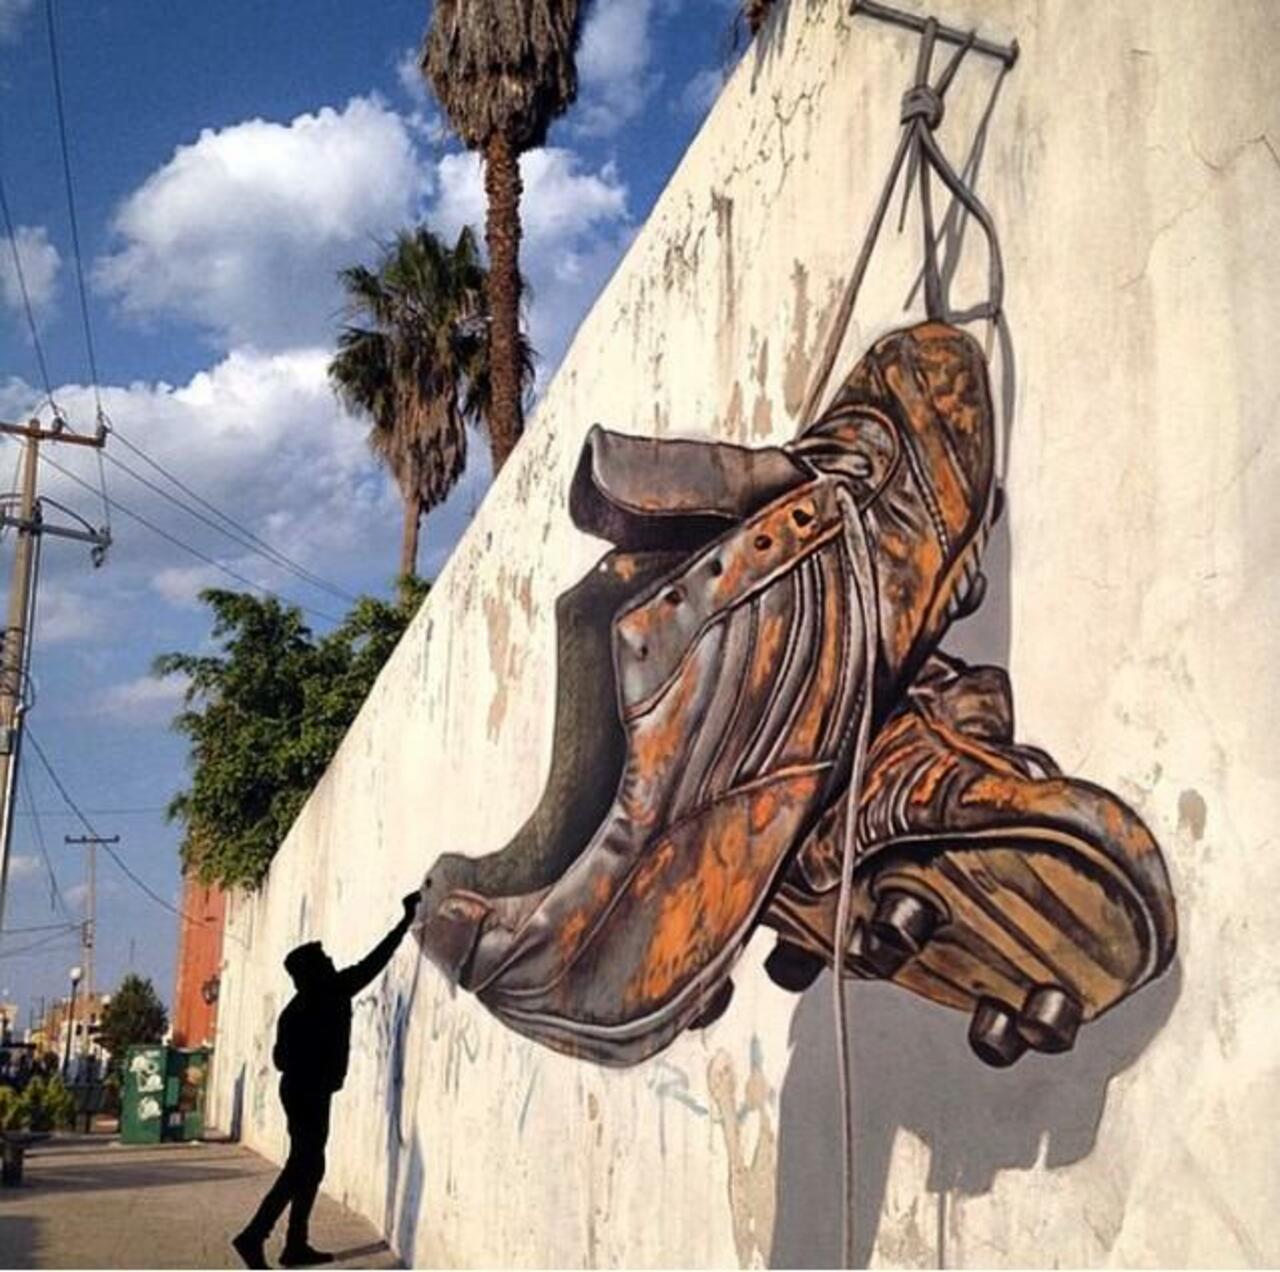 RT "@GoogleStreetArt: Awesome anamorphic 3D Street Art by Juandres Vera 

#art #graffiti #mural #streetart http://t.co/xrlk6Hzh9d"